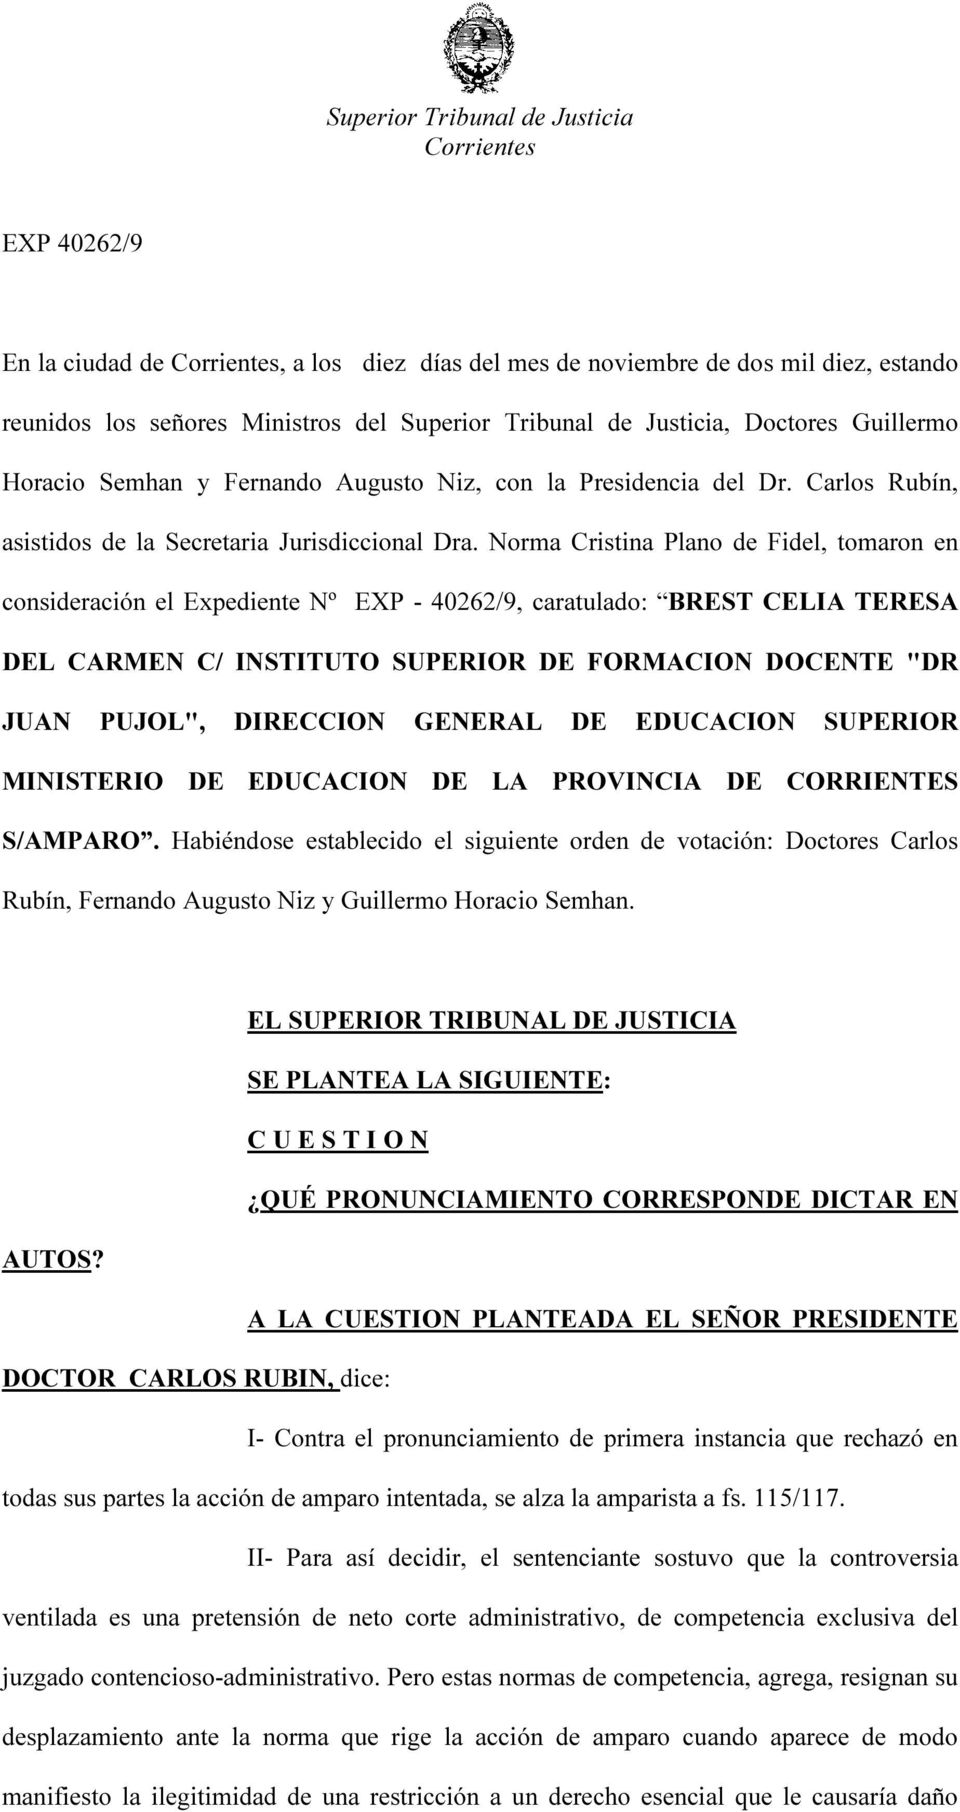 Norma Cristina Plano de Fidel, tomaron en consideración el Expediente Nº EXP - 40262/9, caratulado: BREST CELIA TERESA DEL CARMEN C/ INSTITUTO SUPERIOR DE FORMACION DOCENTE "DR JUAN PUJOL", DIRECCION